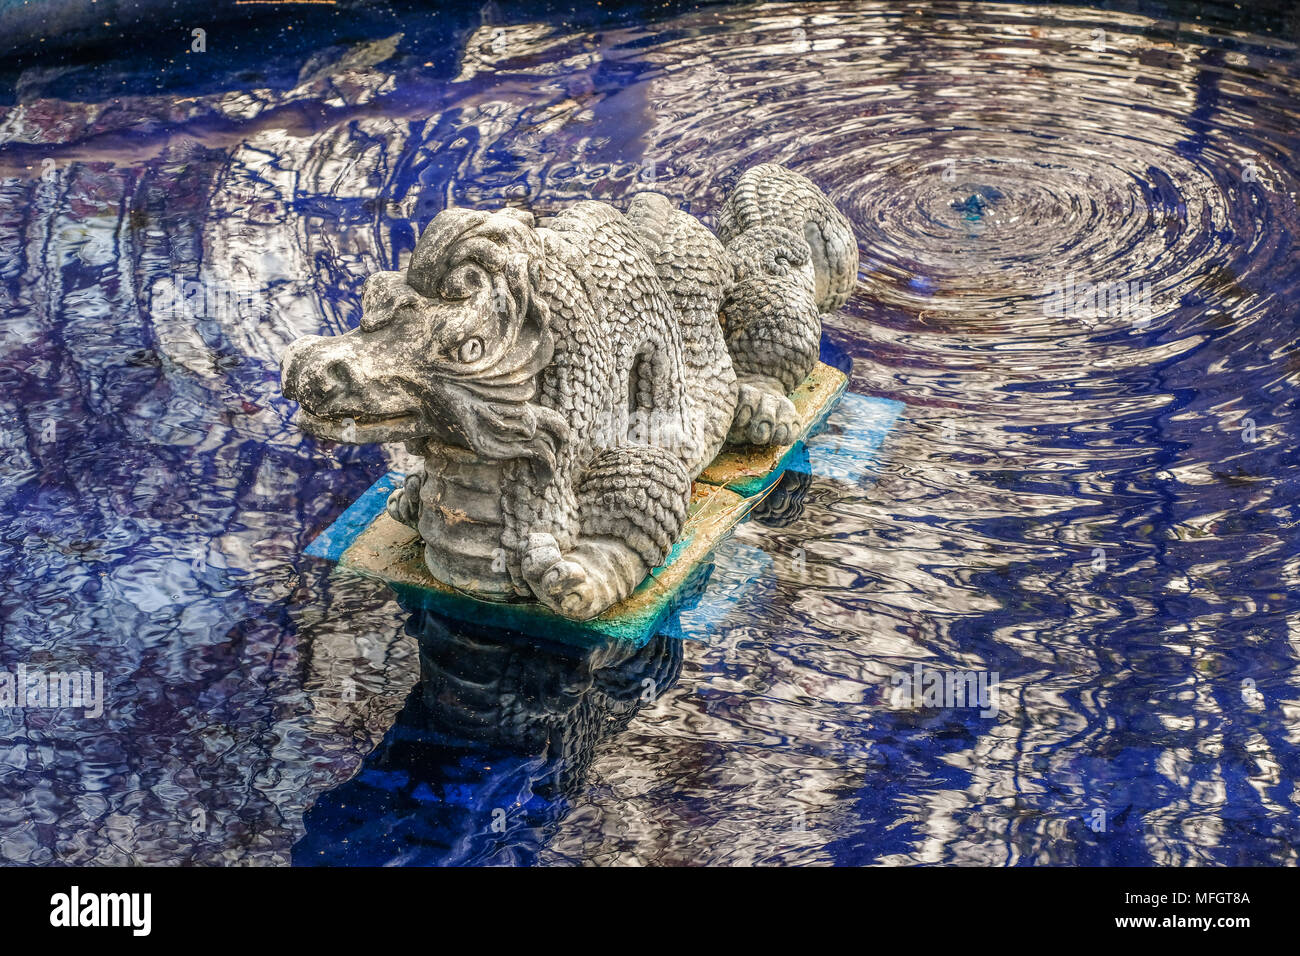 La escultura de piedra de un dragón en un jardín público; el dragón se sienta en un estanque con agua de color azul; reflexiones sobre el agua Foto de stock